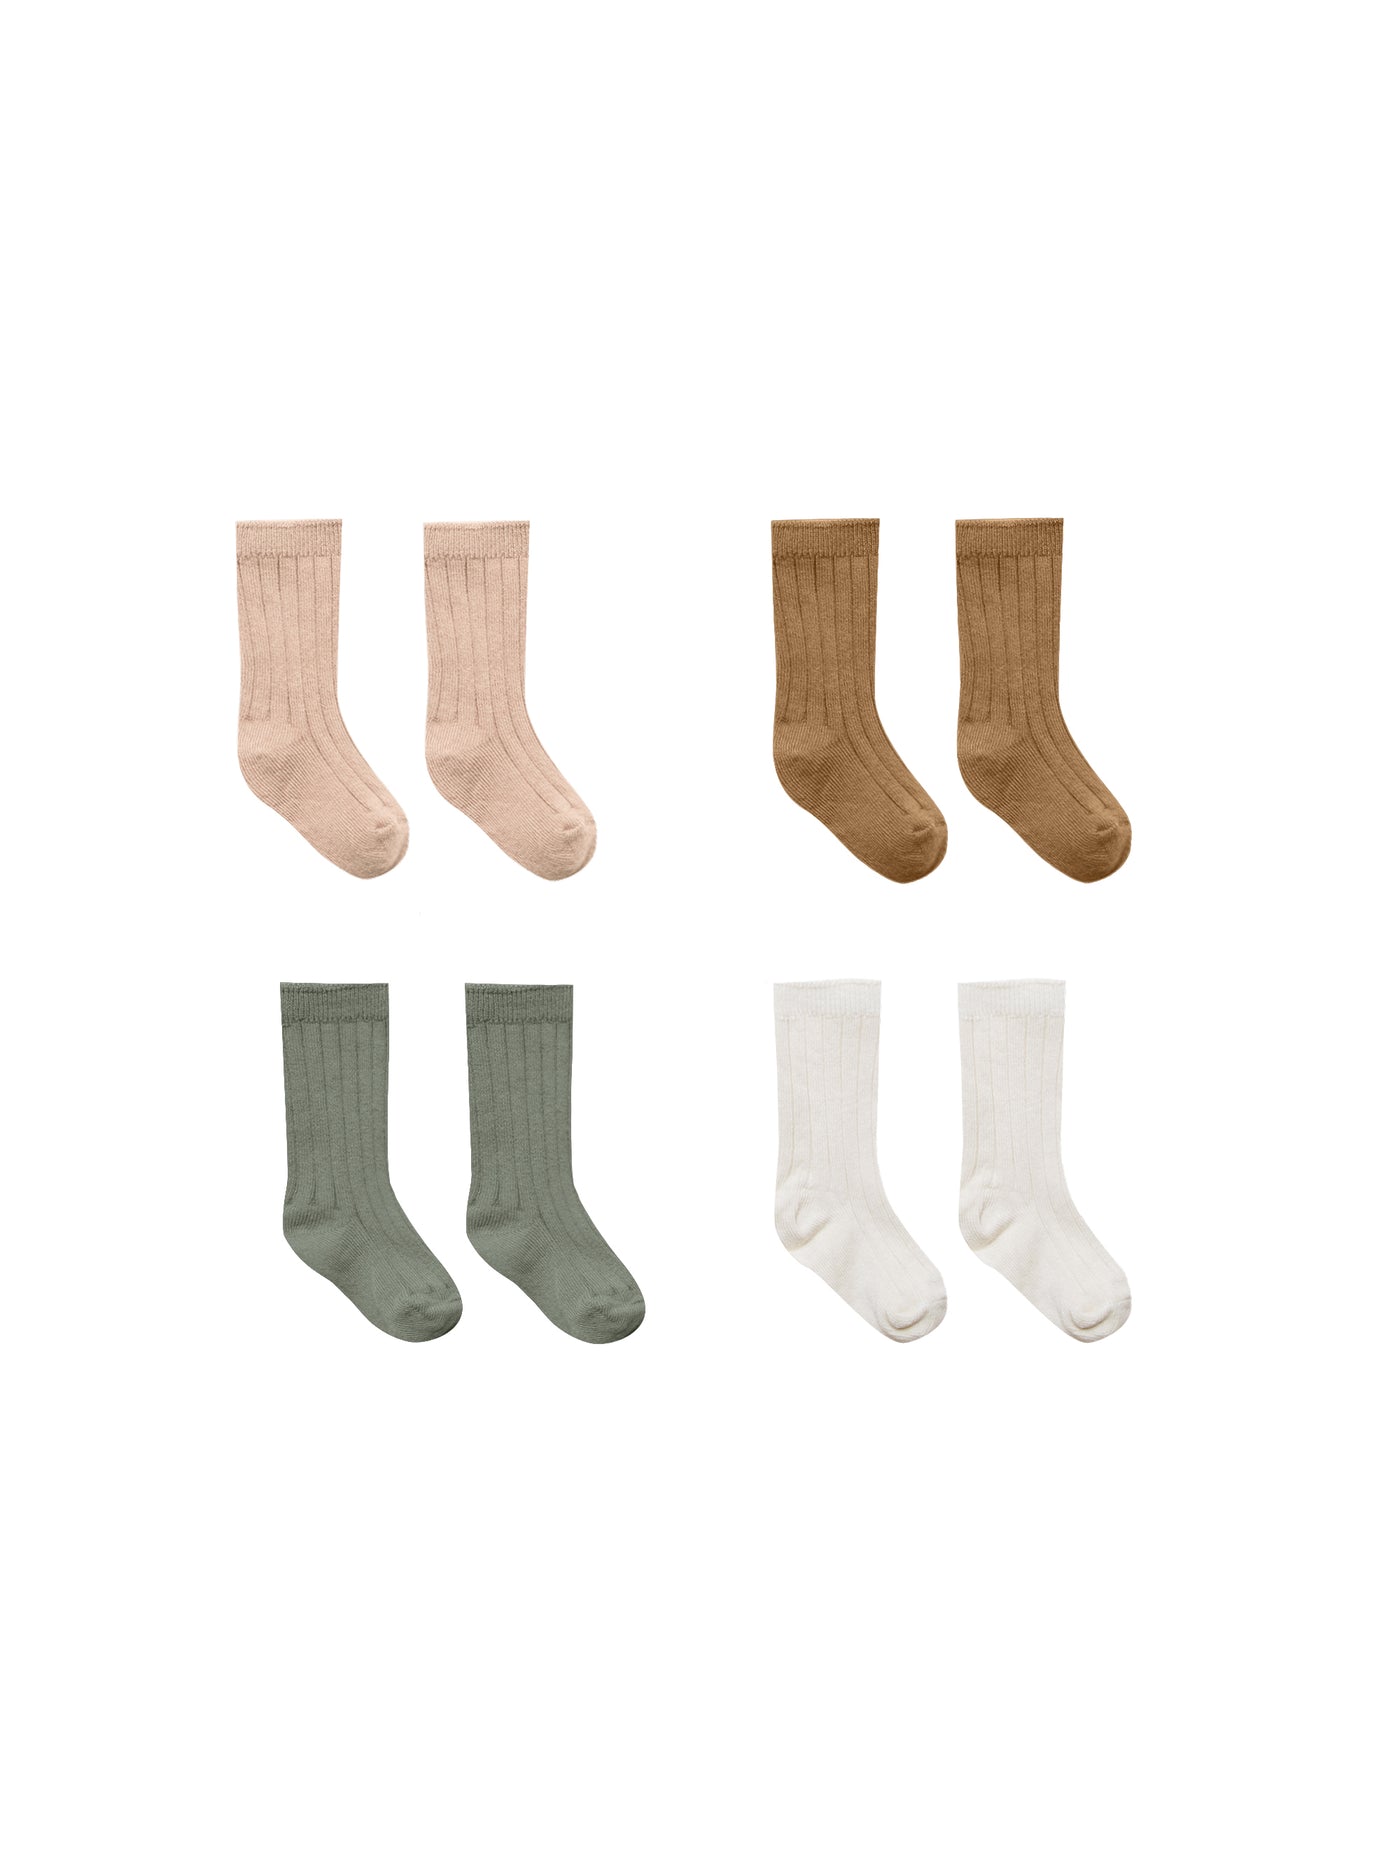 Six Pair Sock Set